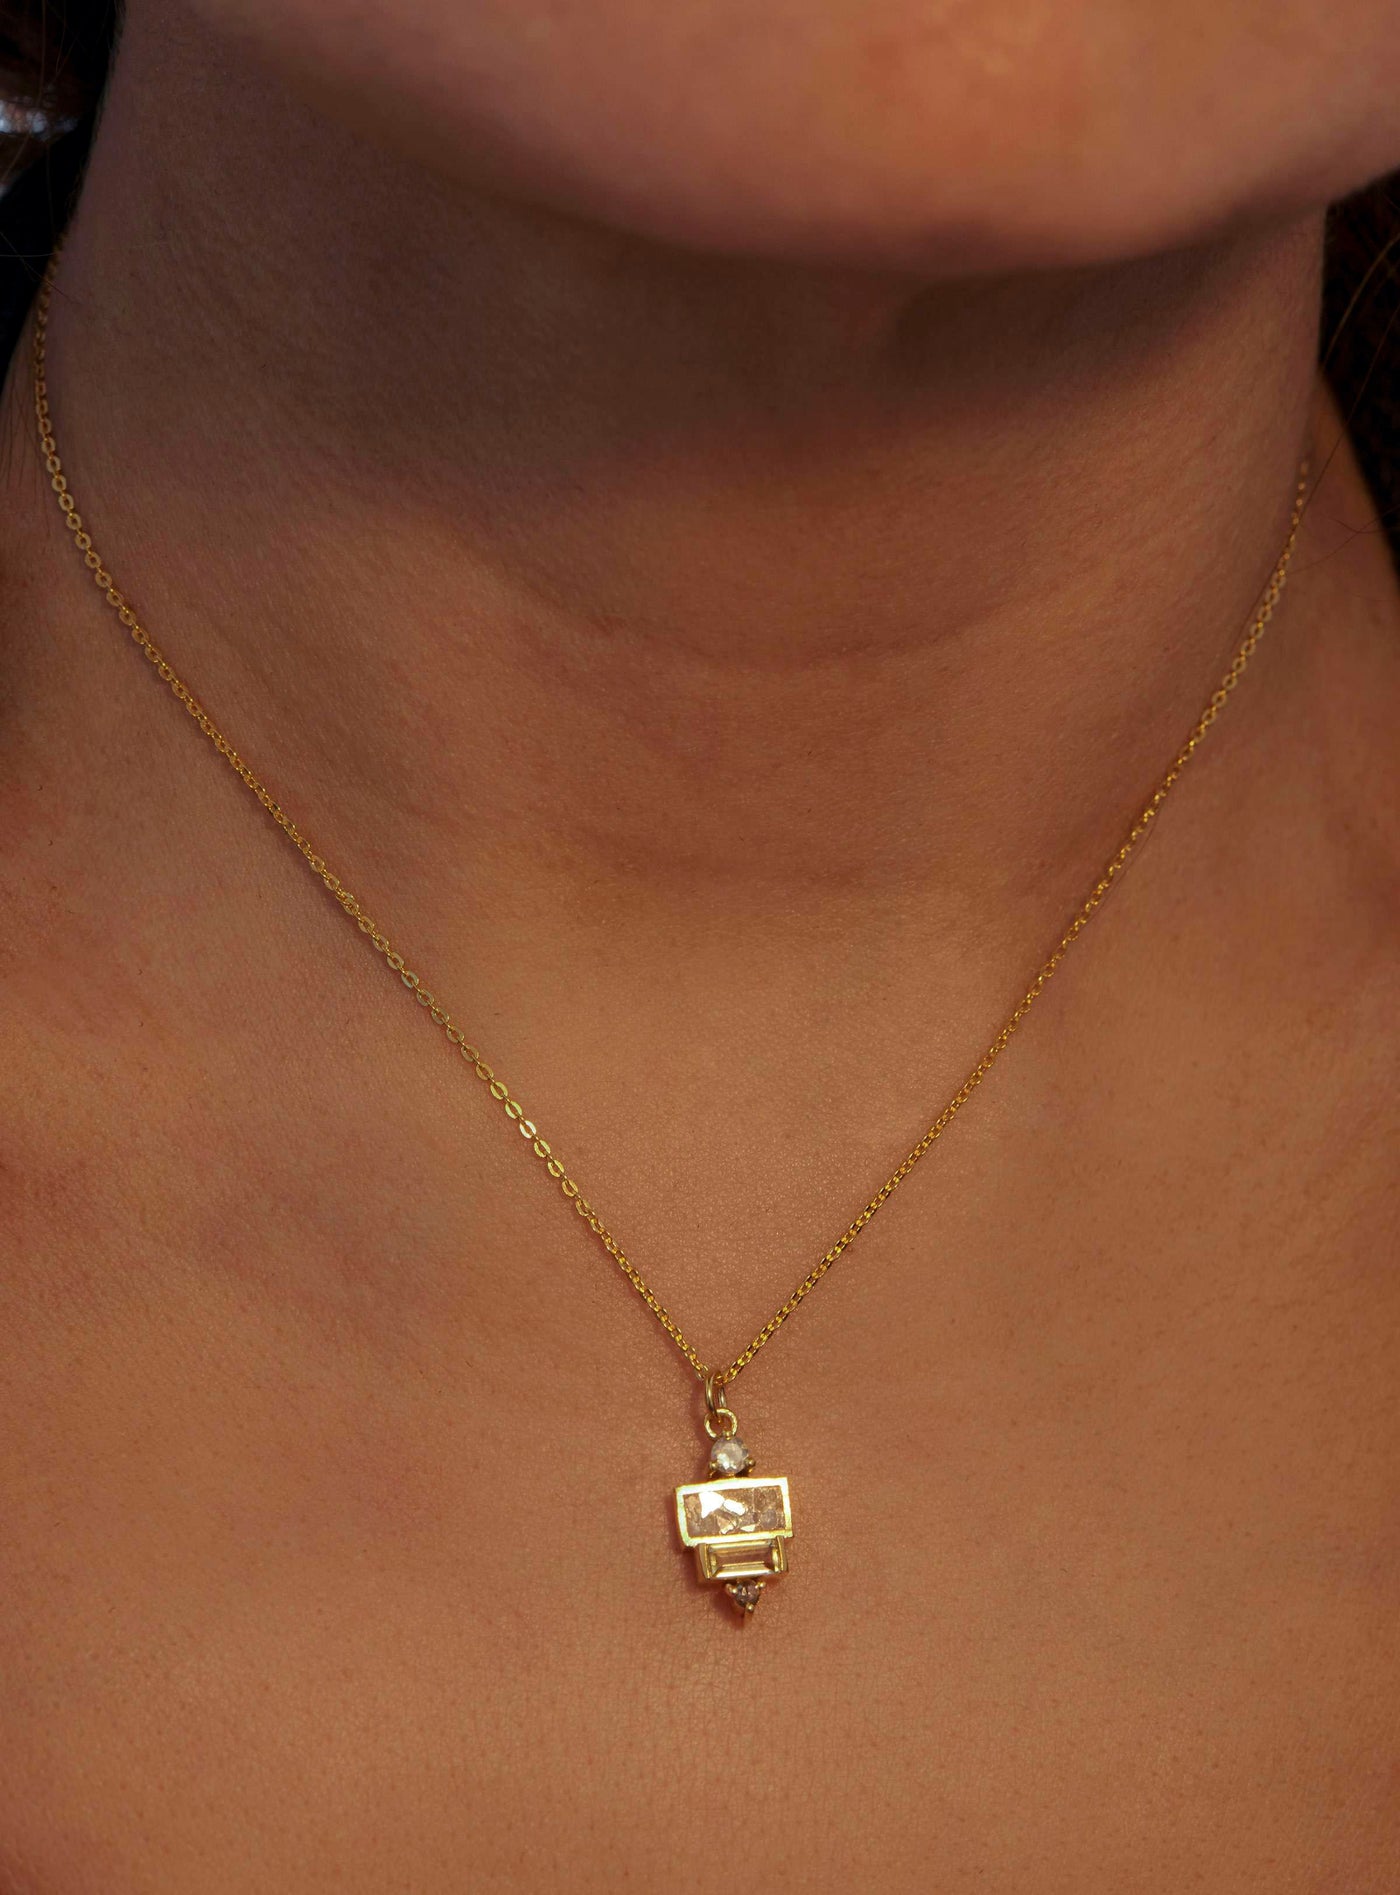 uncut diamonds resin vermeil gold necklace